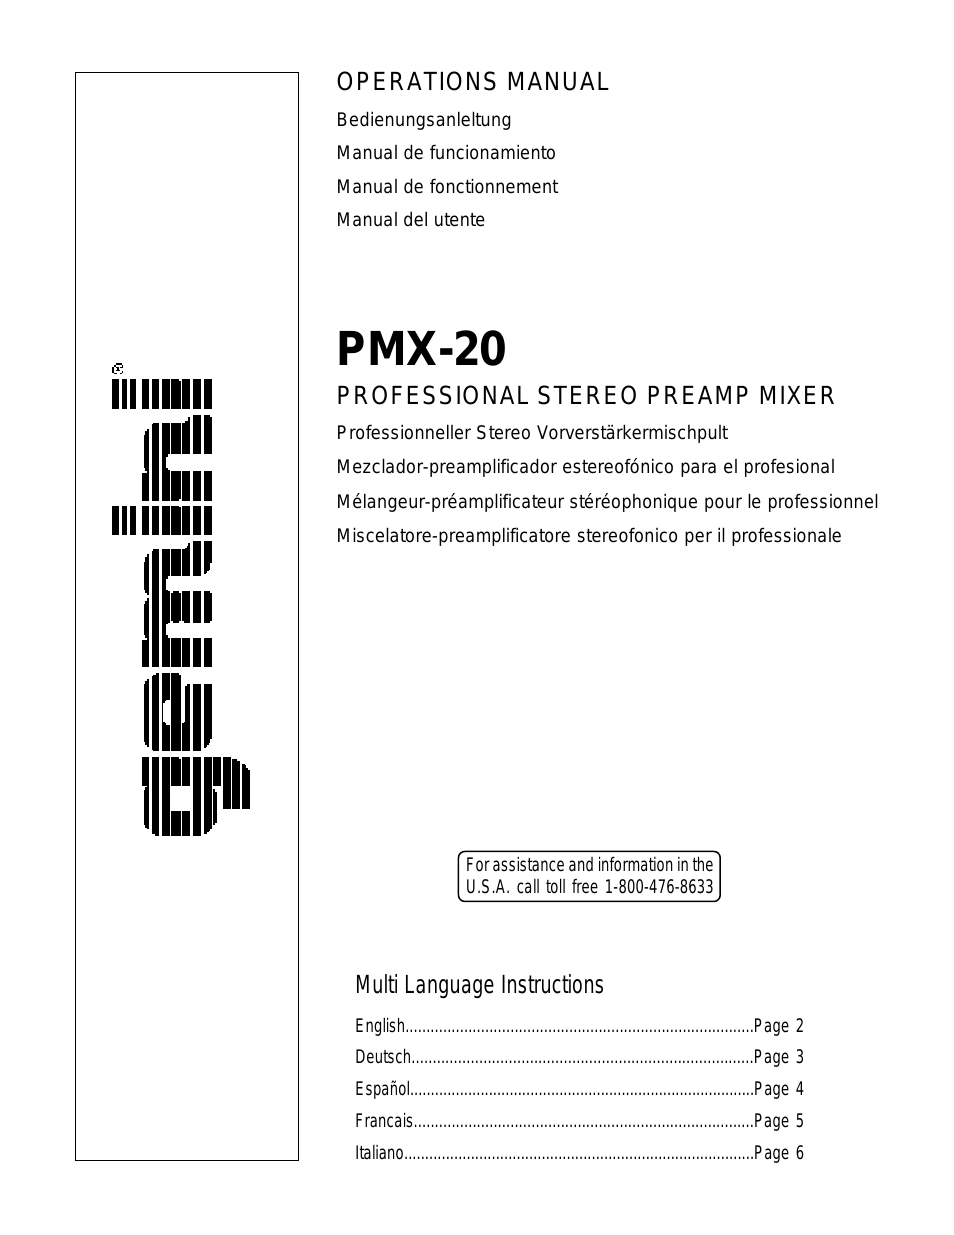 PMX-20